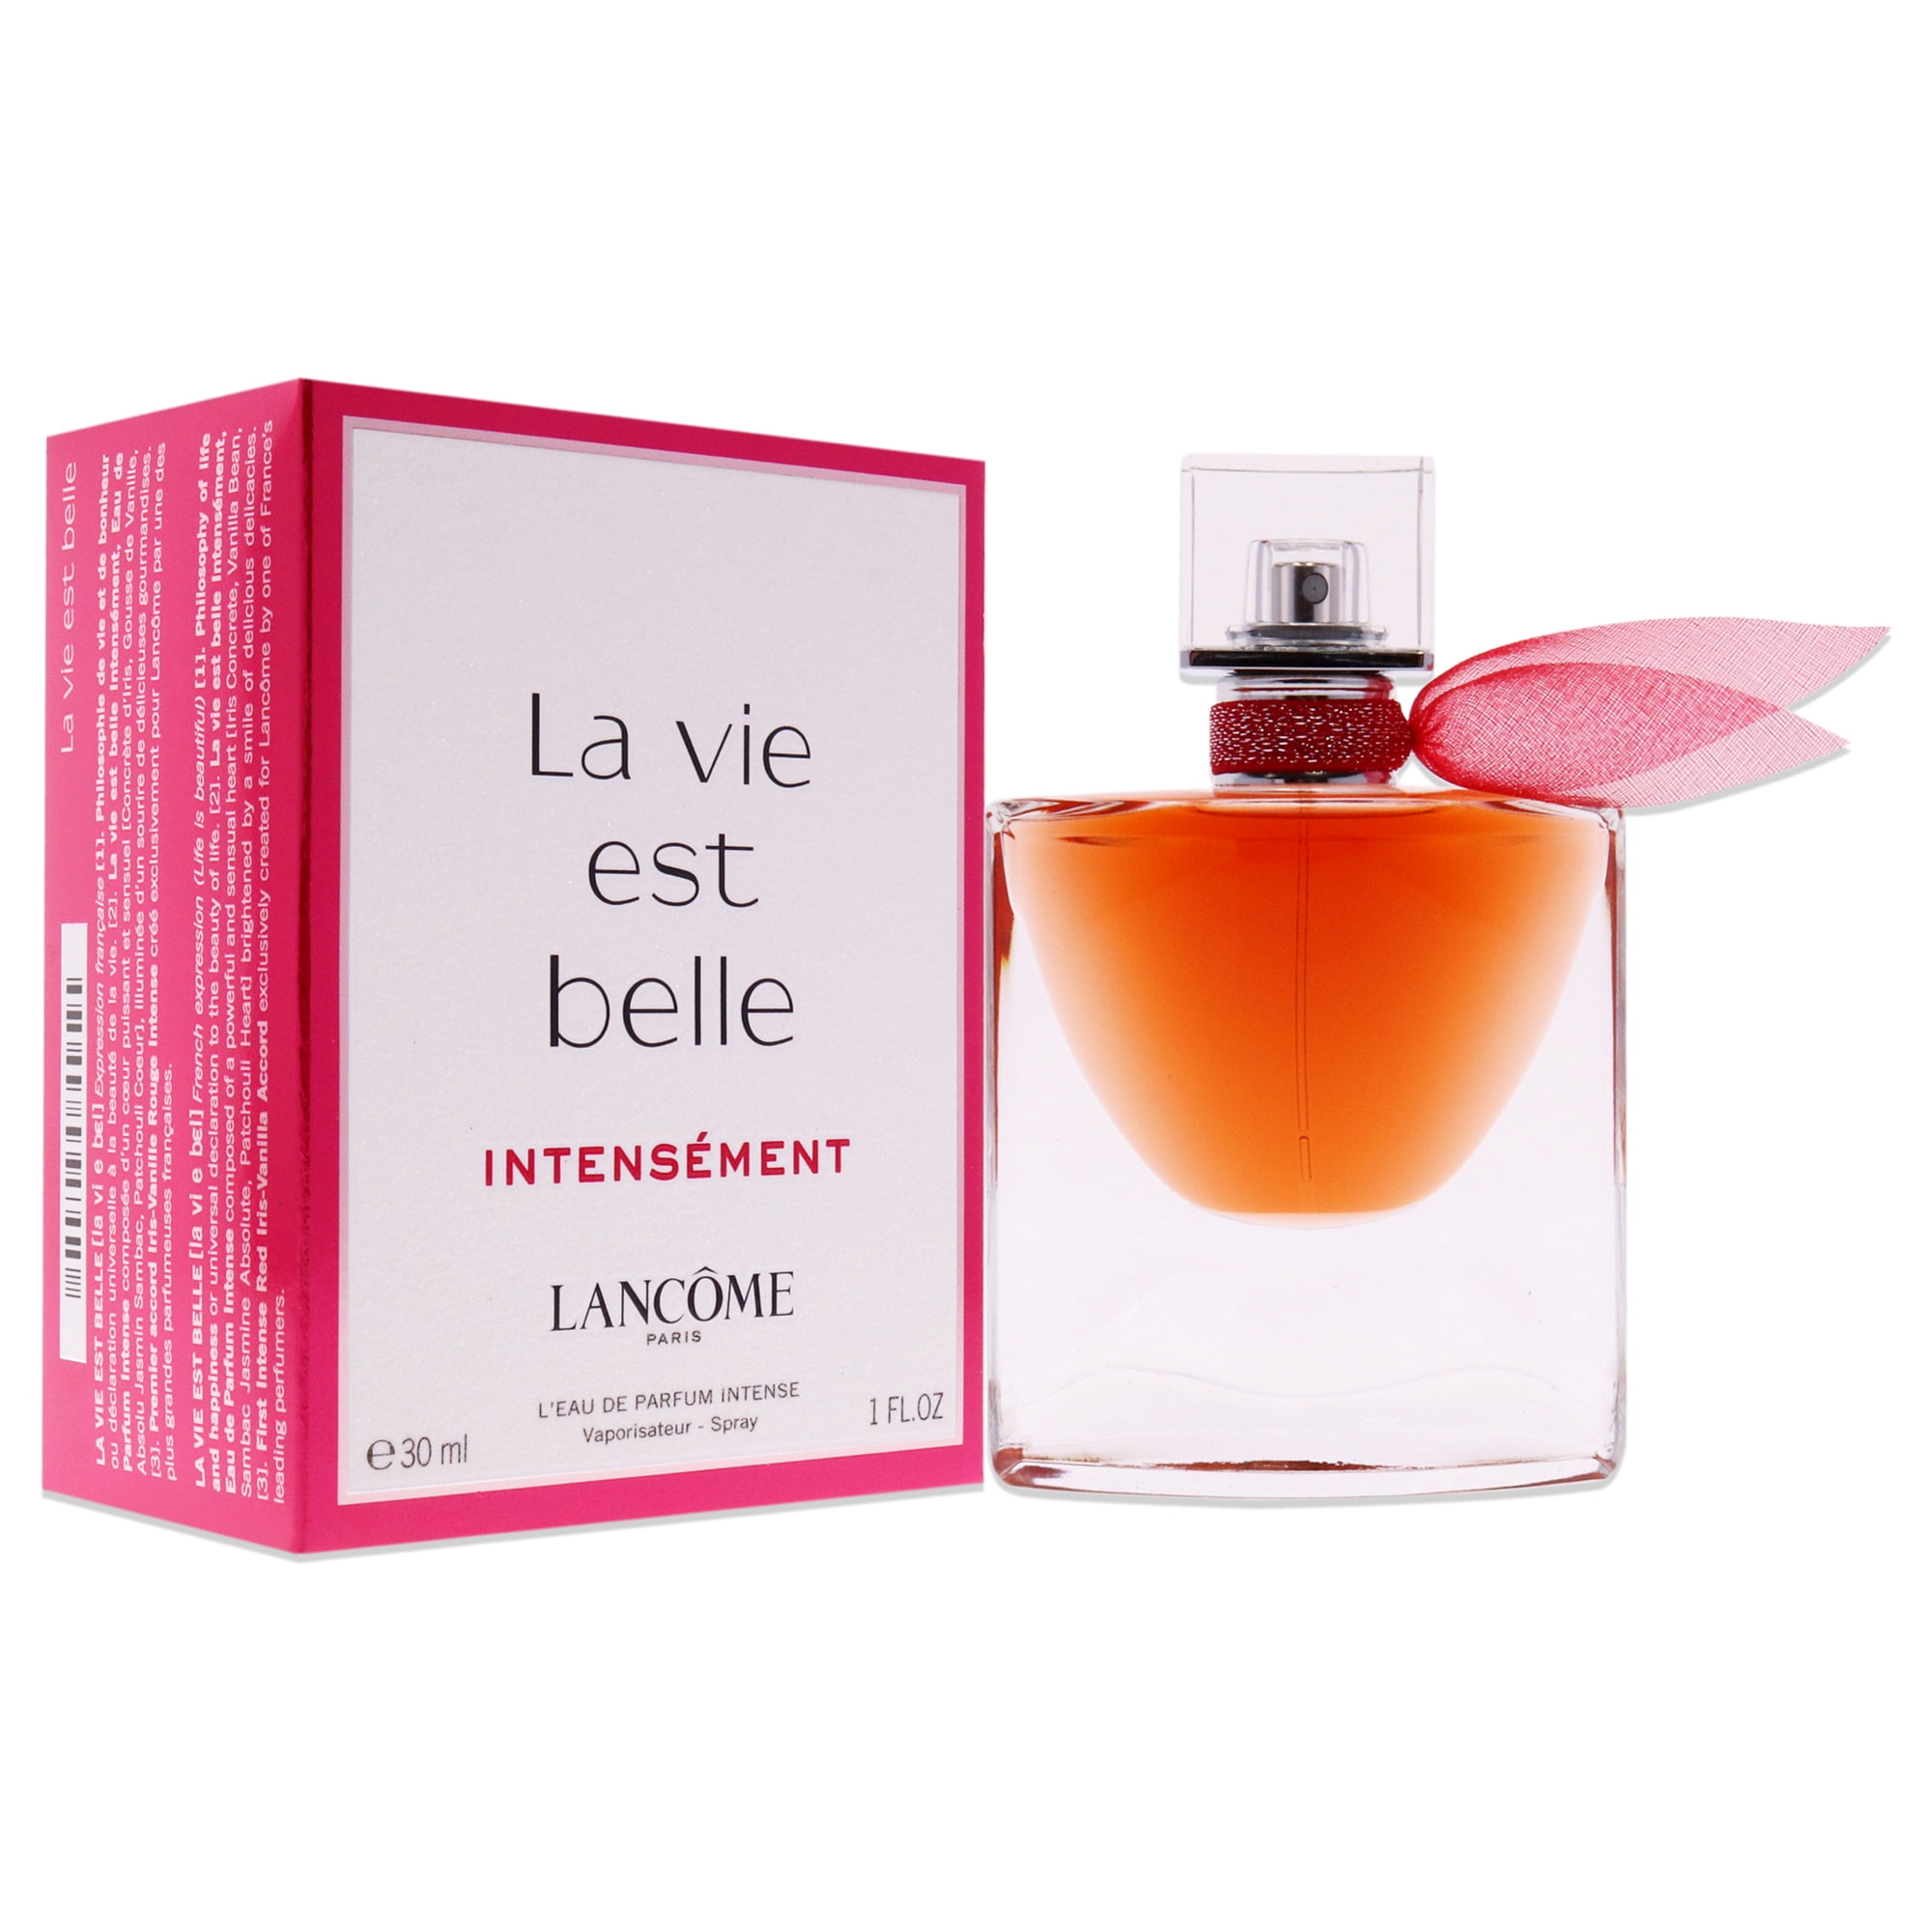 Lancome La Vie Est Belle Intensement, 1 oz LEau de Parfum Intense Spray